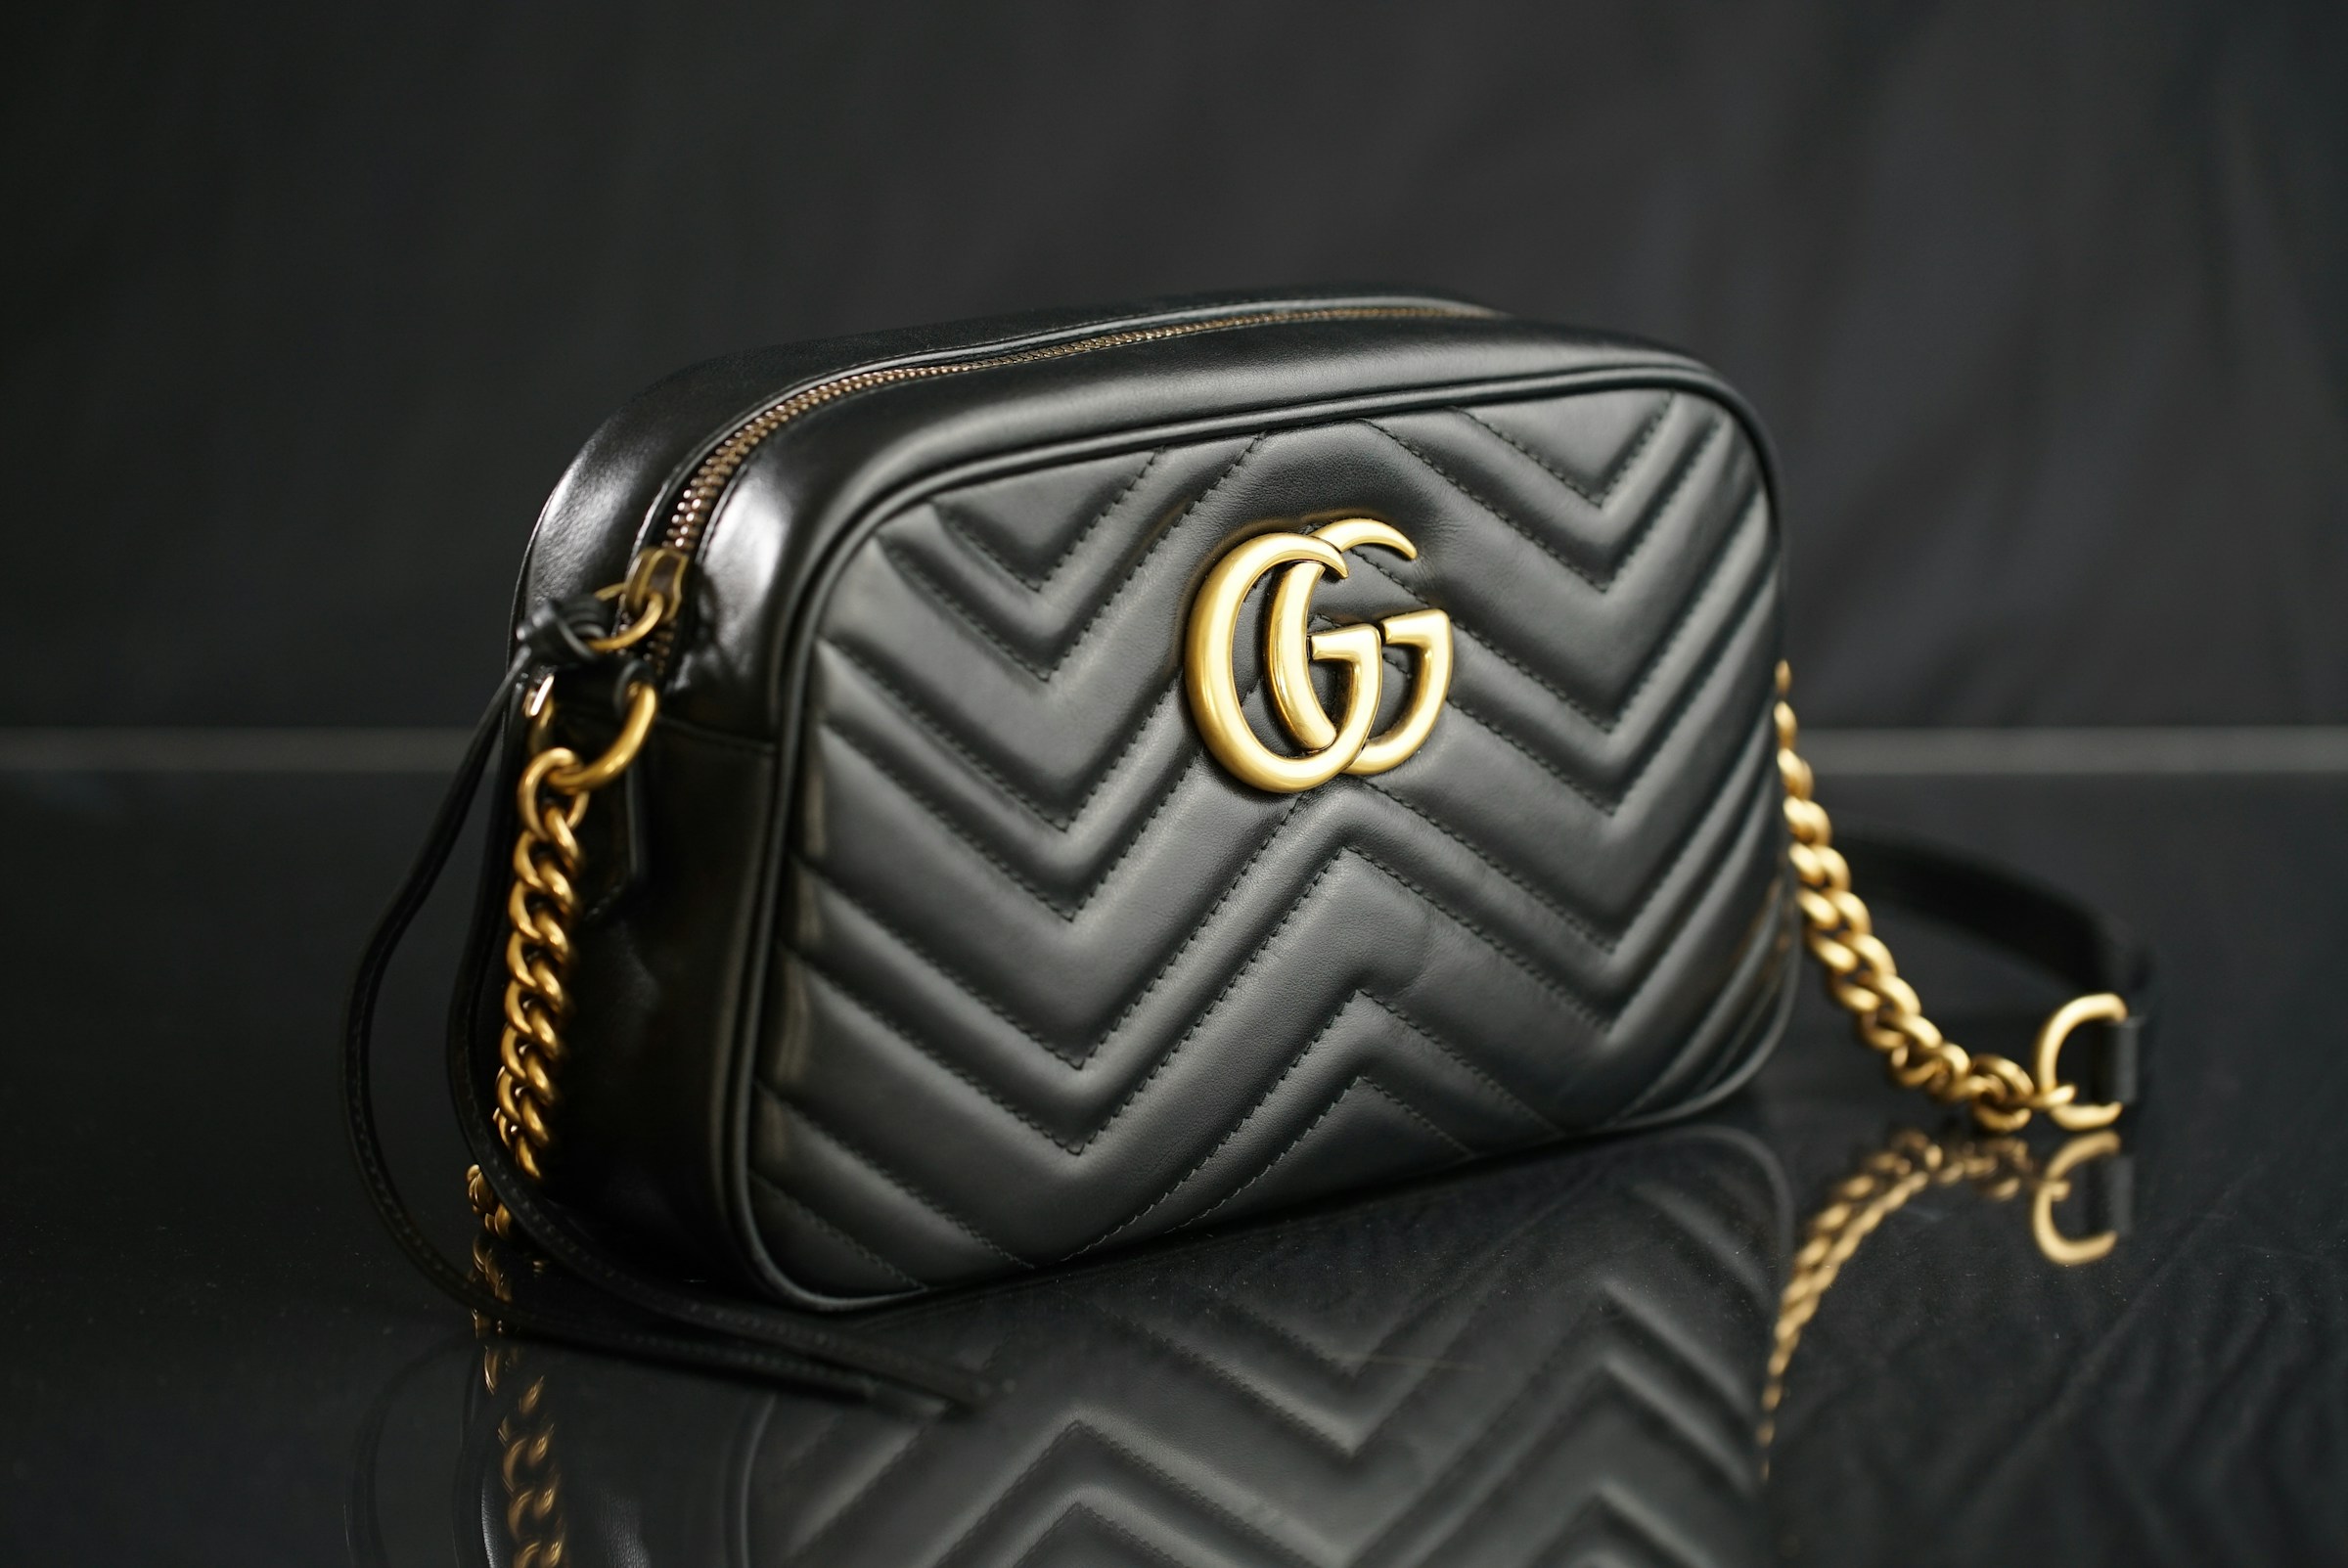 A black Gucci handbag | Source: Unsplash